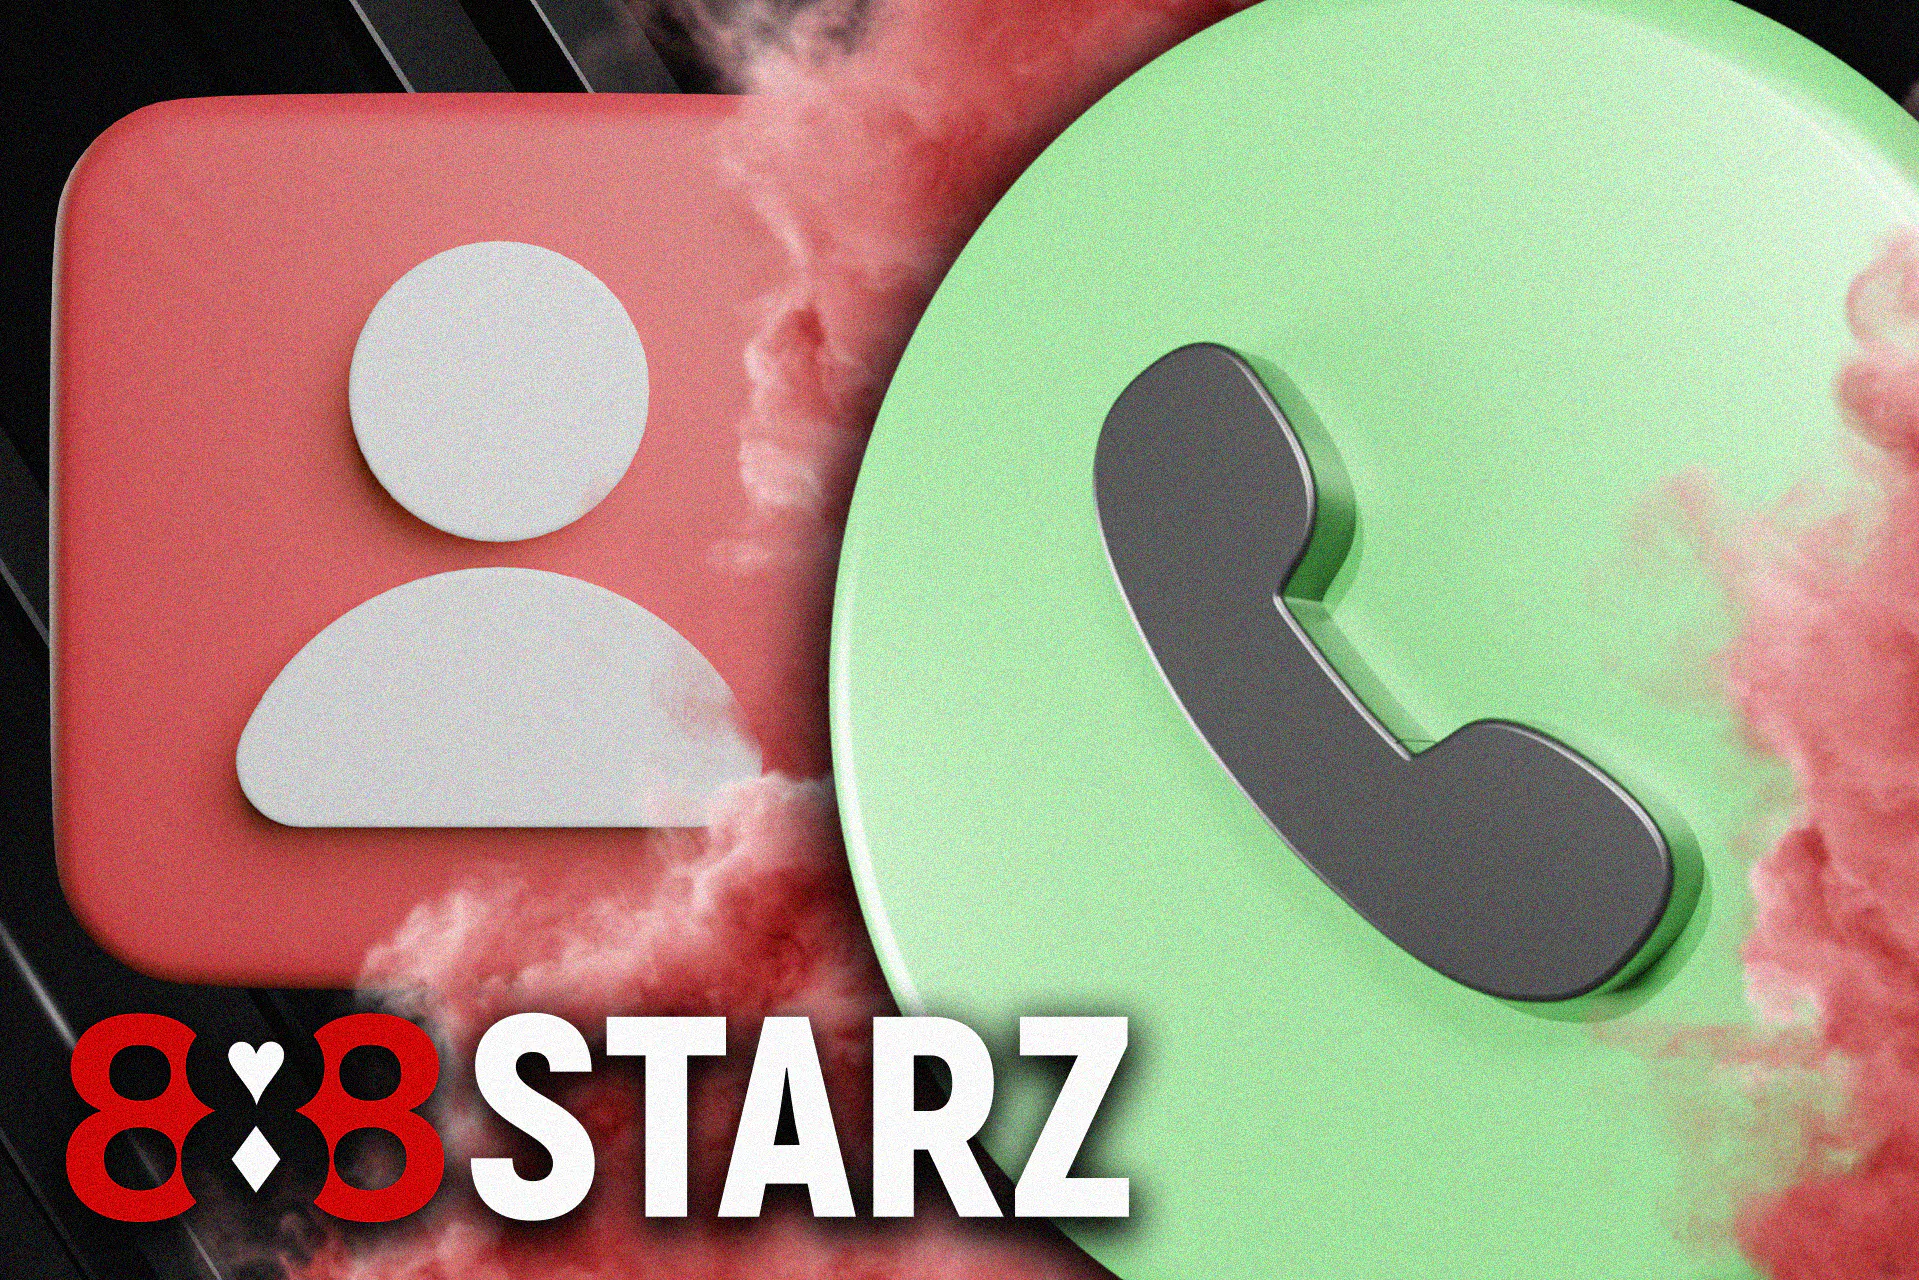 अपनी सट्टेबाजी की समस्याओं को हल करने के लिए 888starz सपोर्ट टीम को कॉल करें।